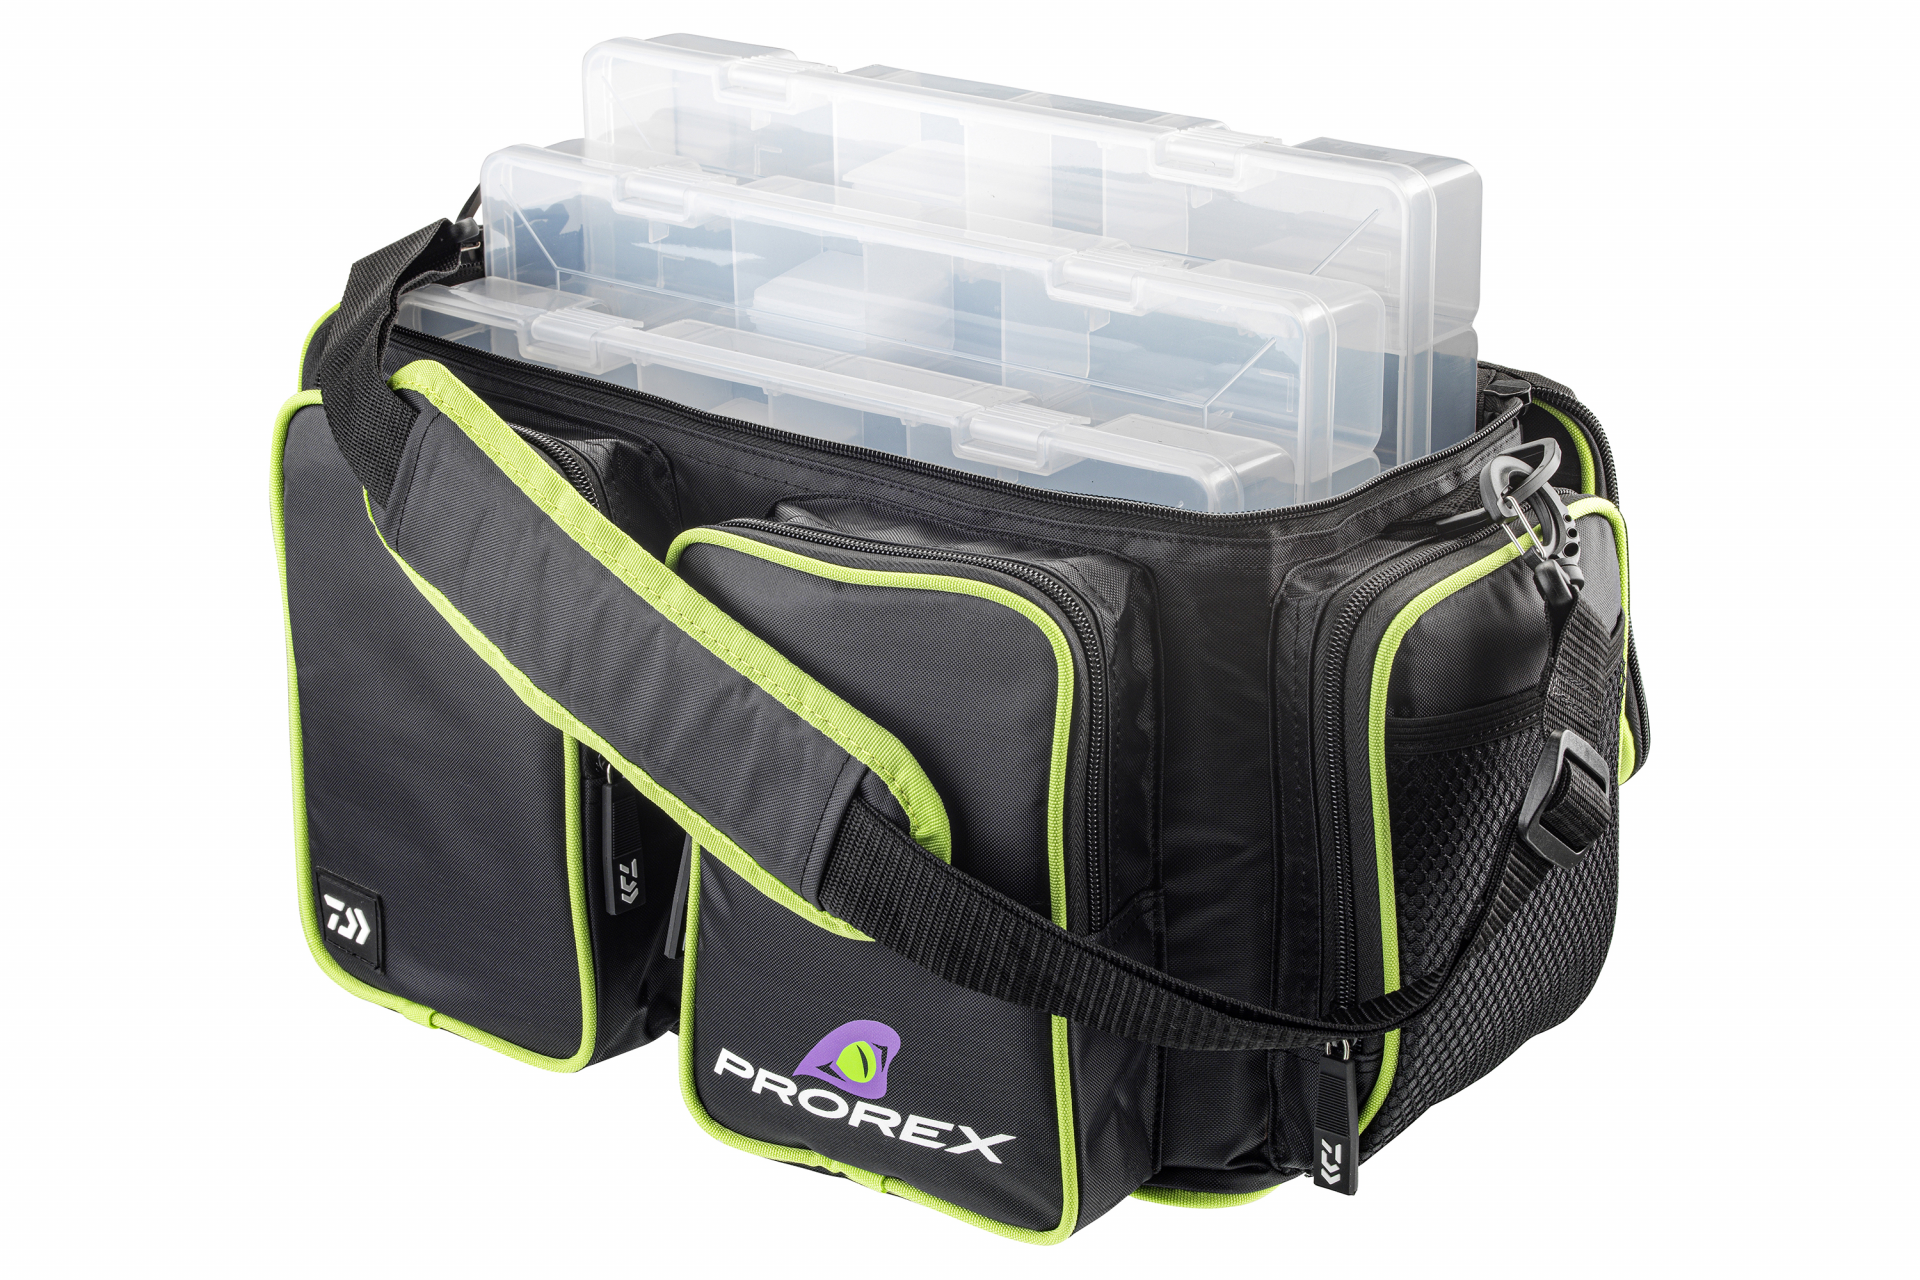 Prorex Tackle Bag <span>| Torba na przynęty | Rozmiar L</span>